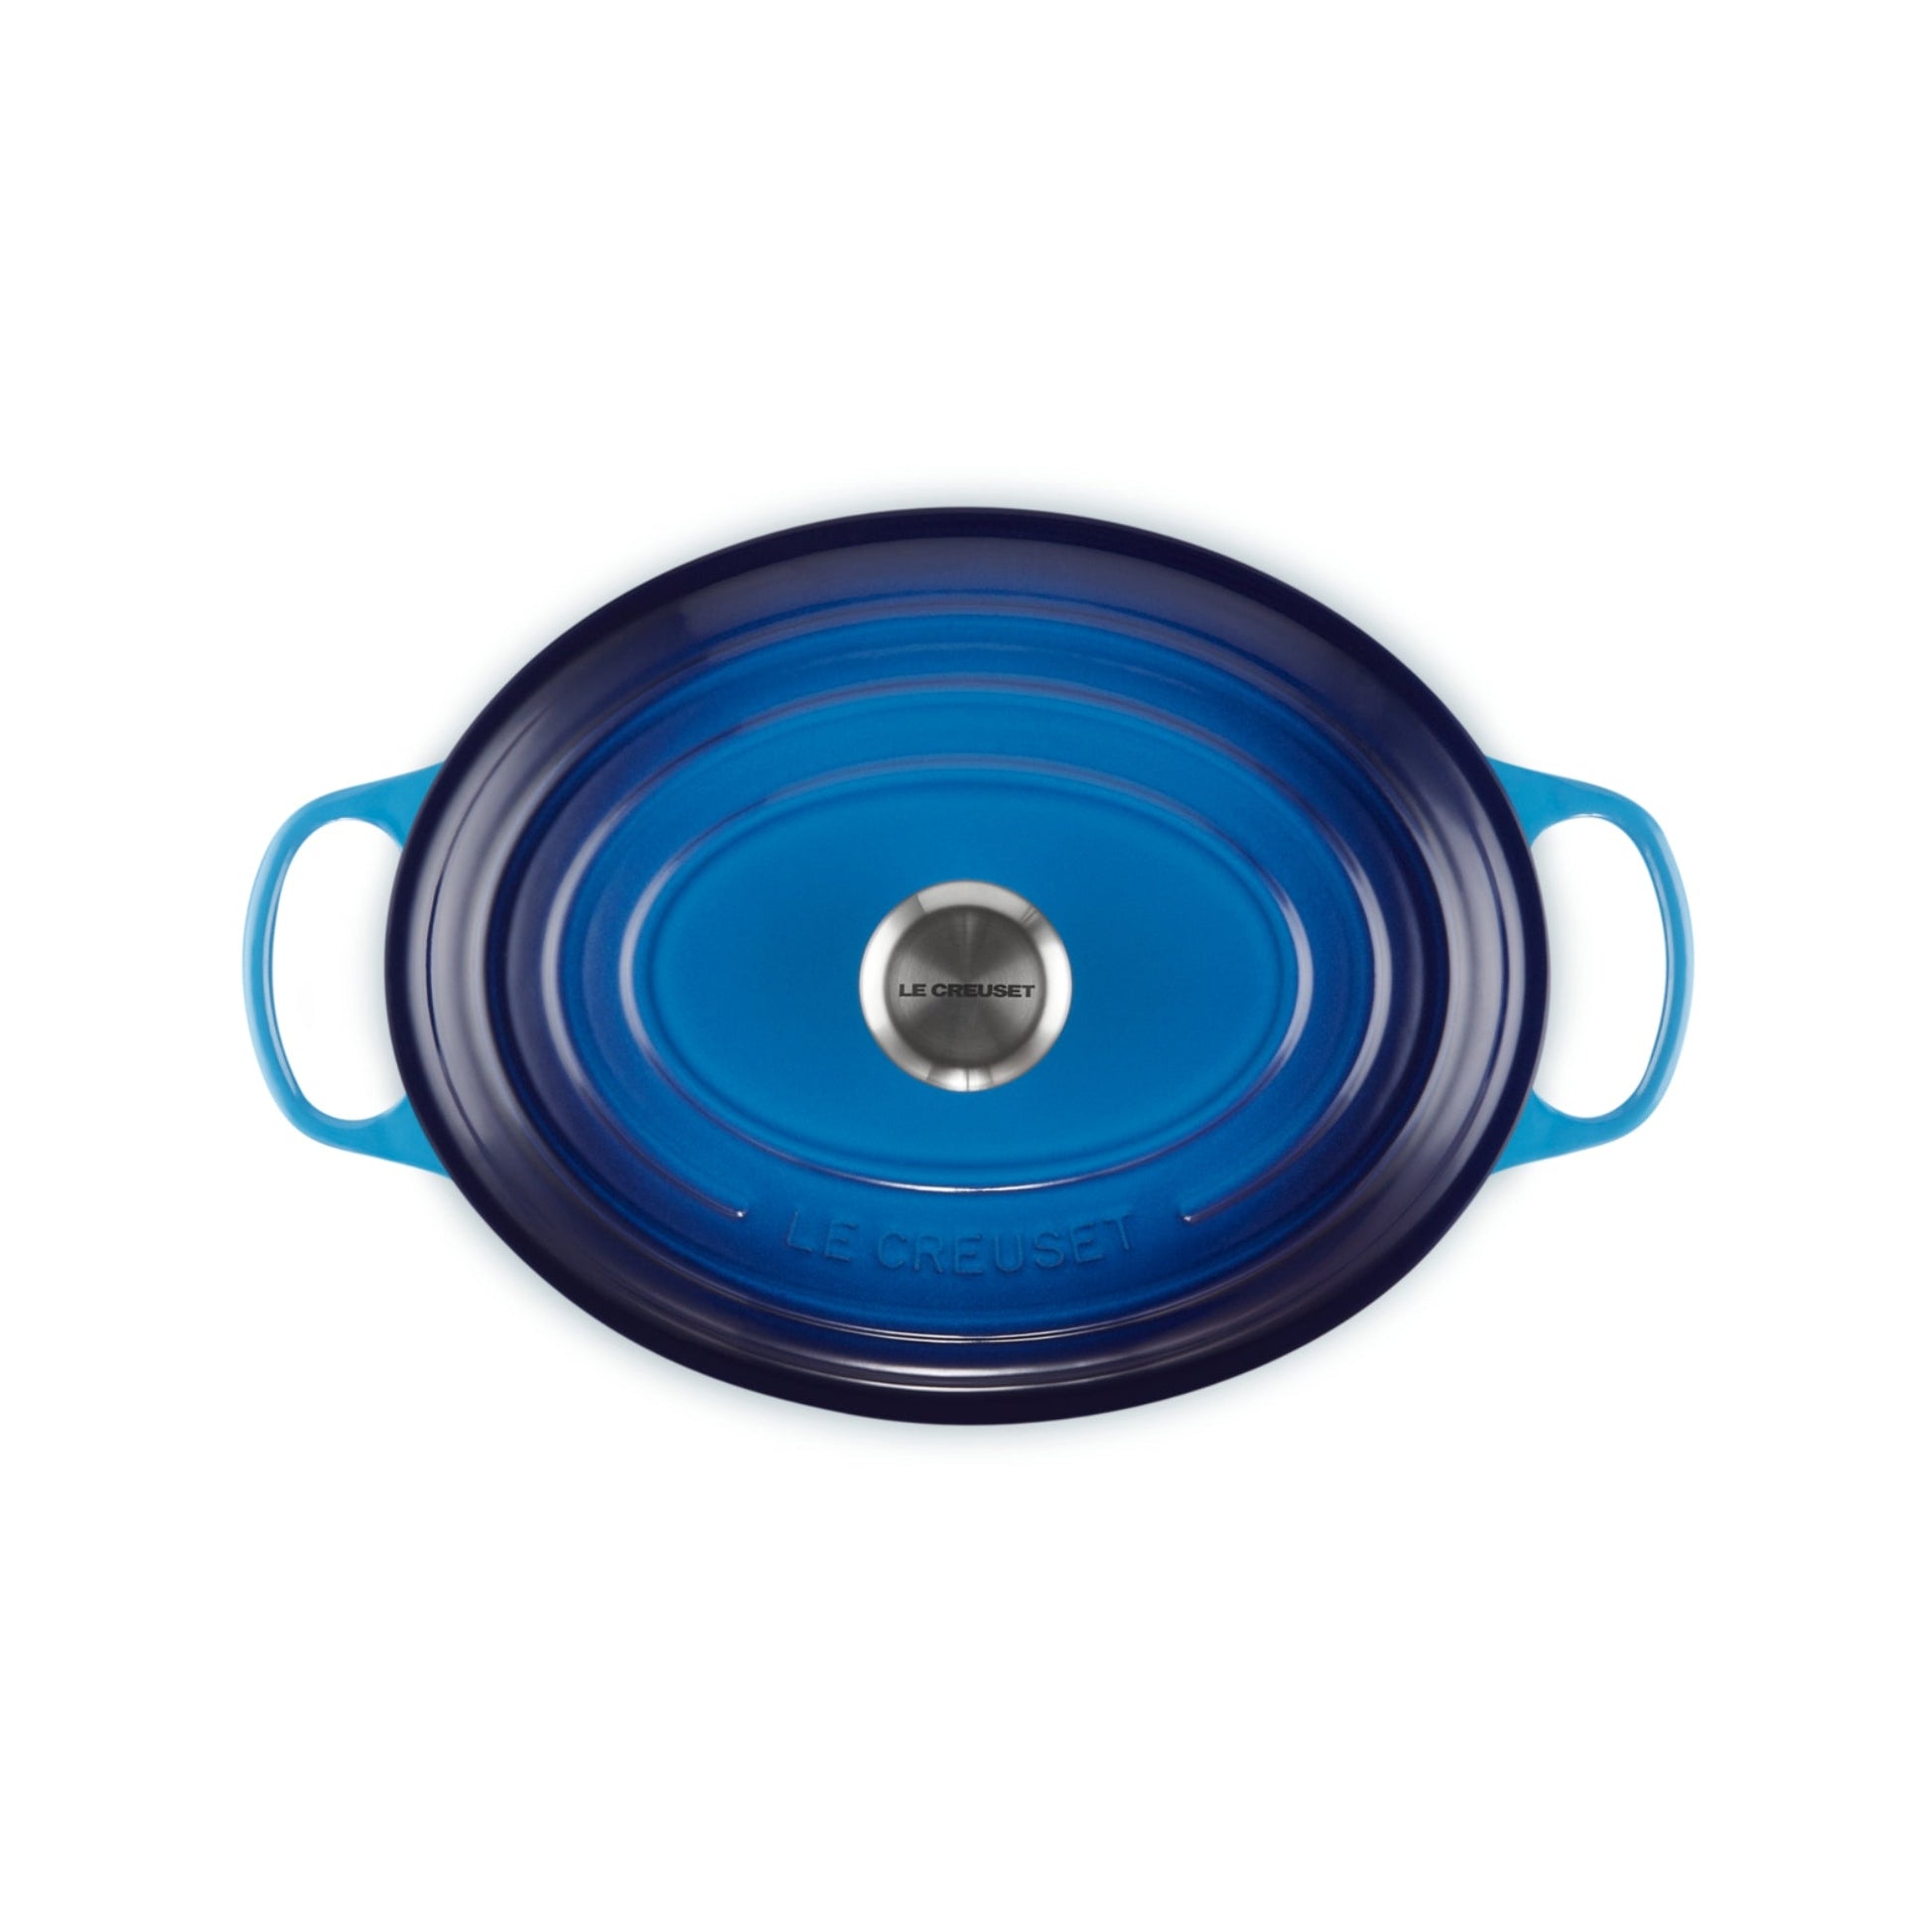 Cocotte Oval Azure 27 Cm Le Creuset5#Azul